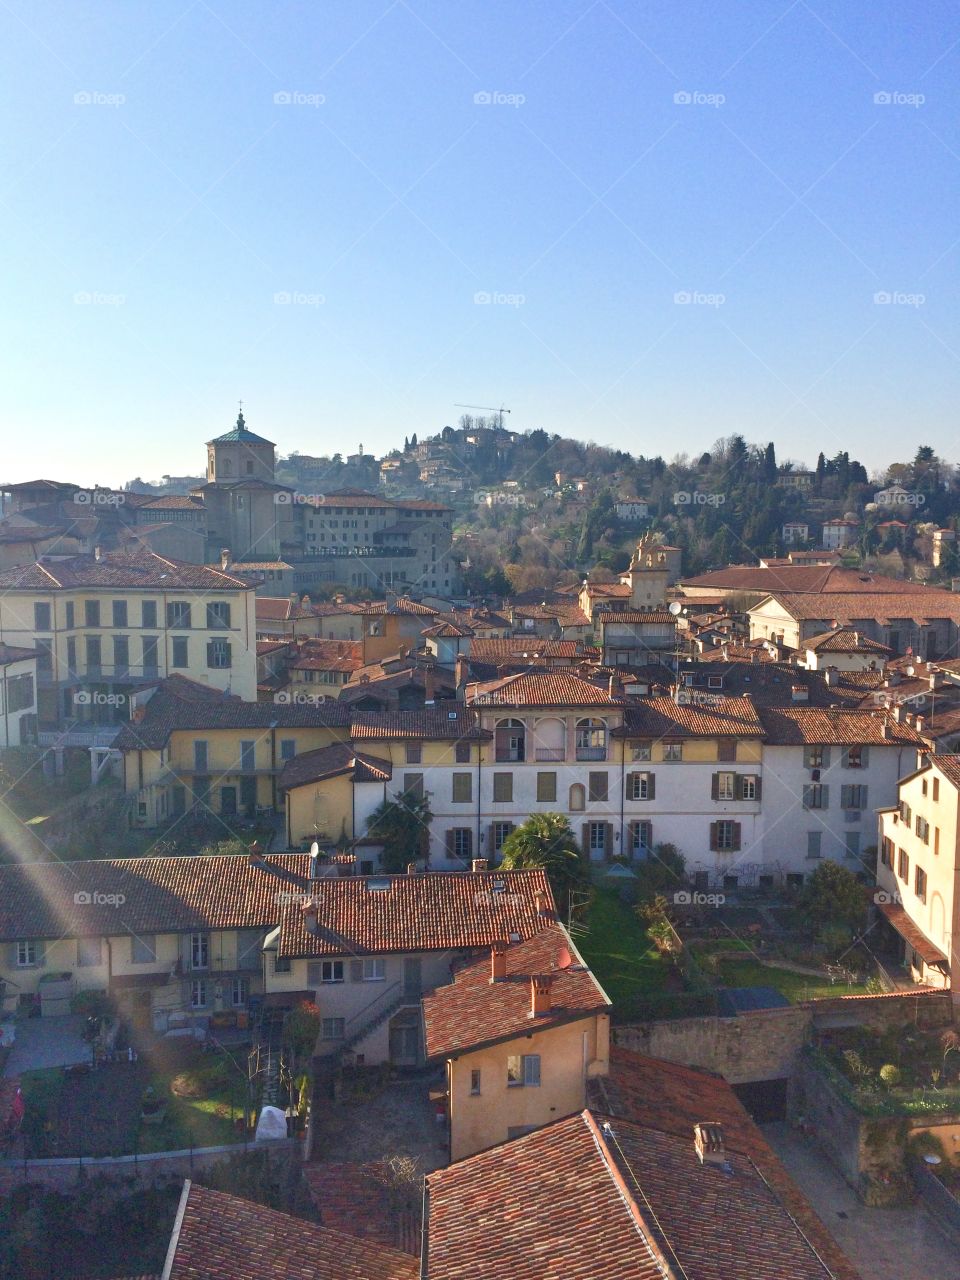 Bergamo, Italy from the clock tower 